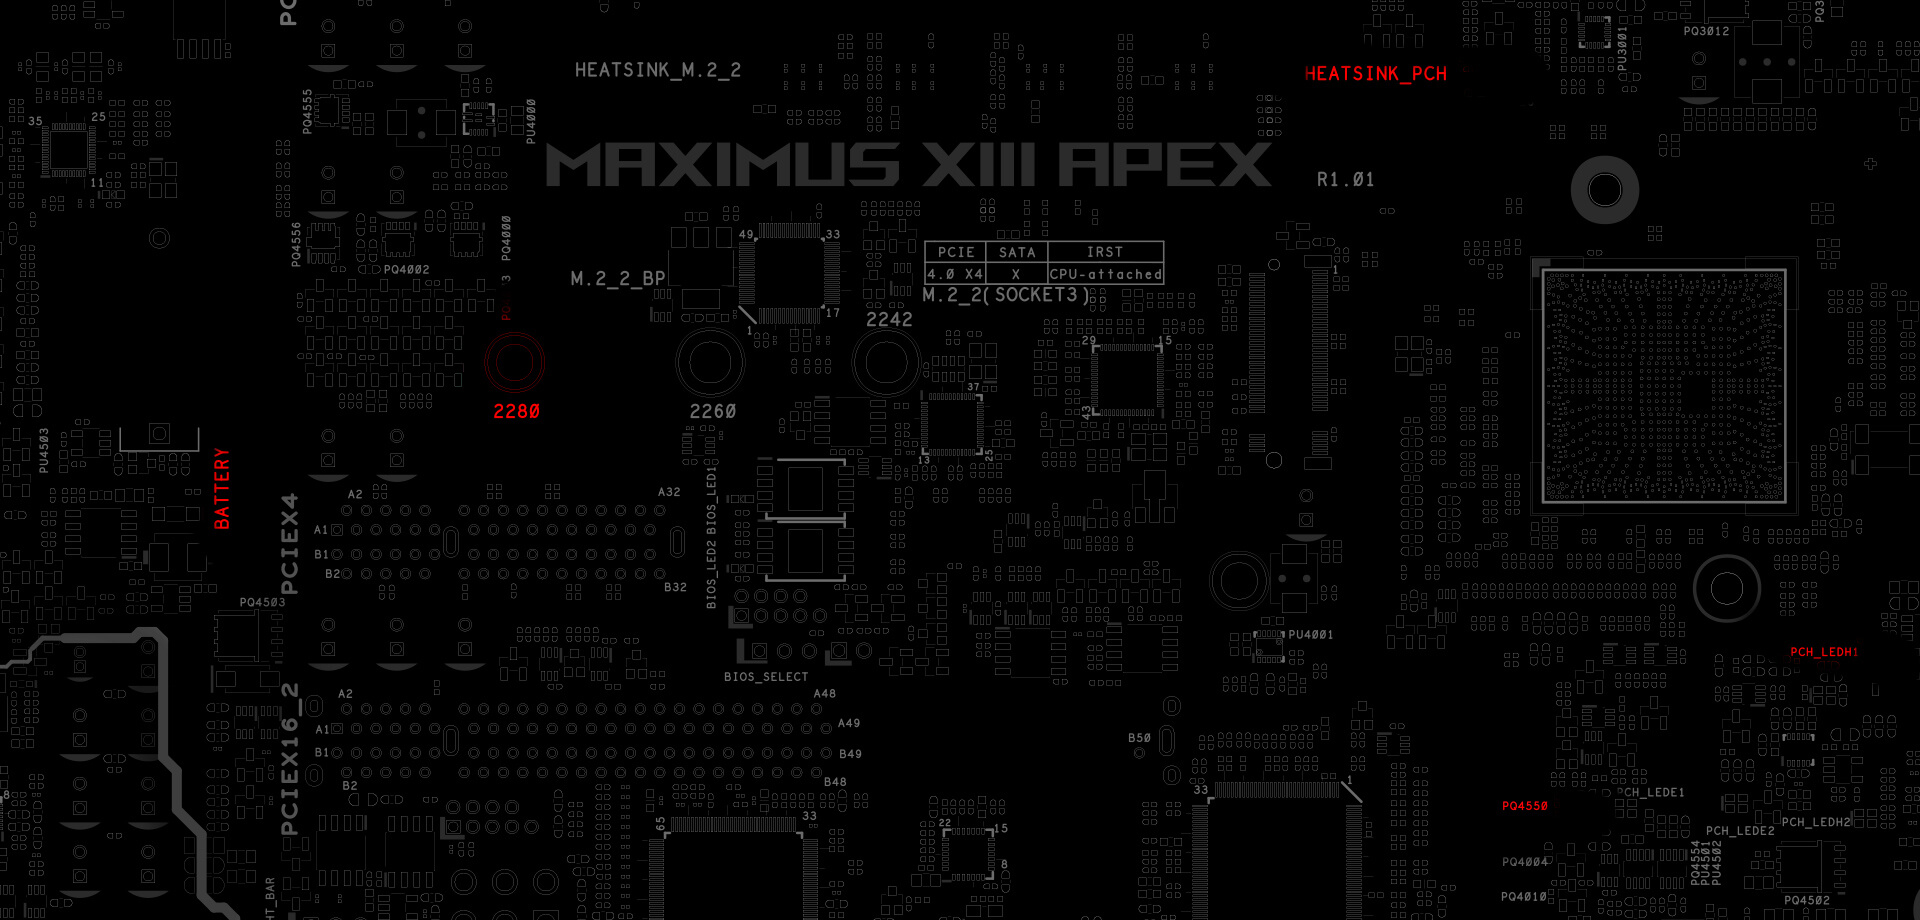 The PCB design of ROG Maximus XIII Apex